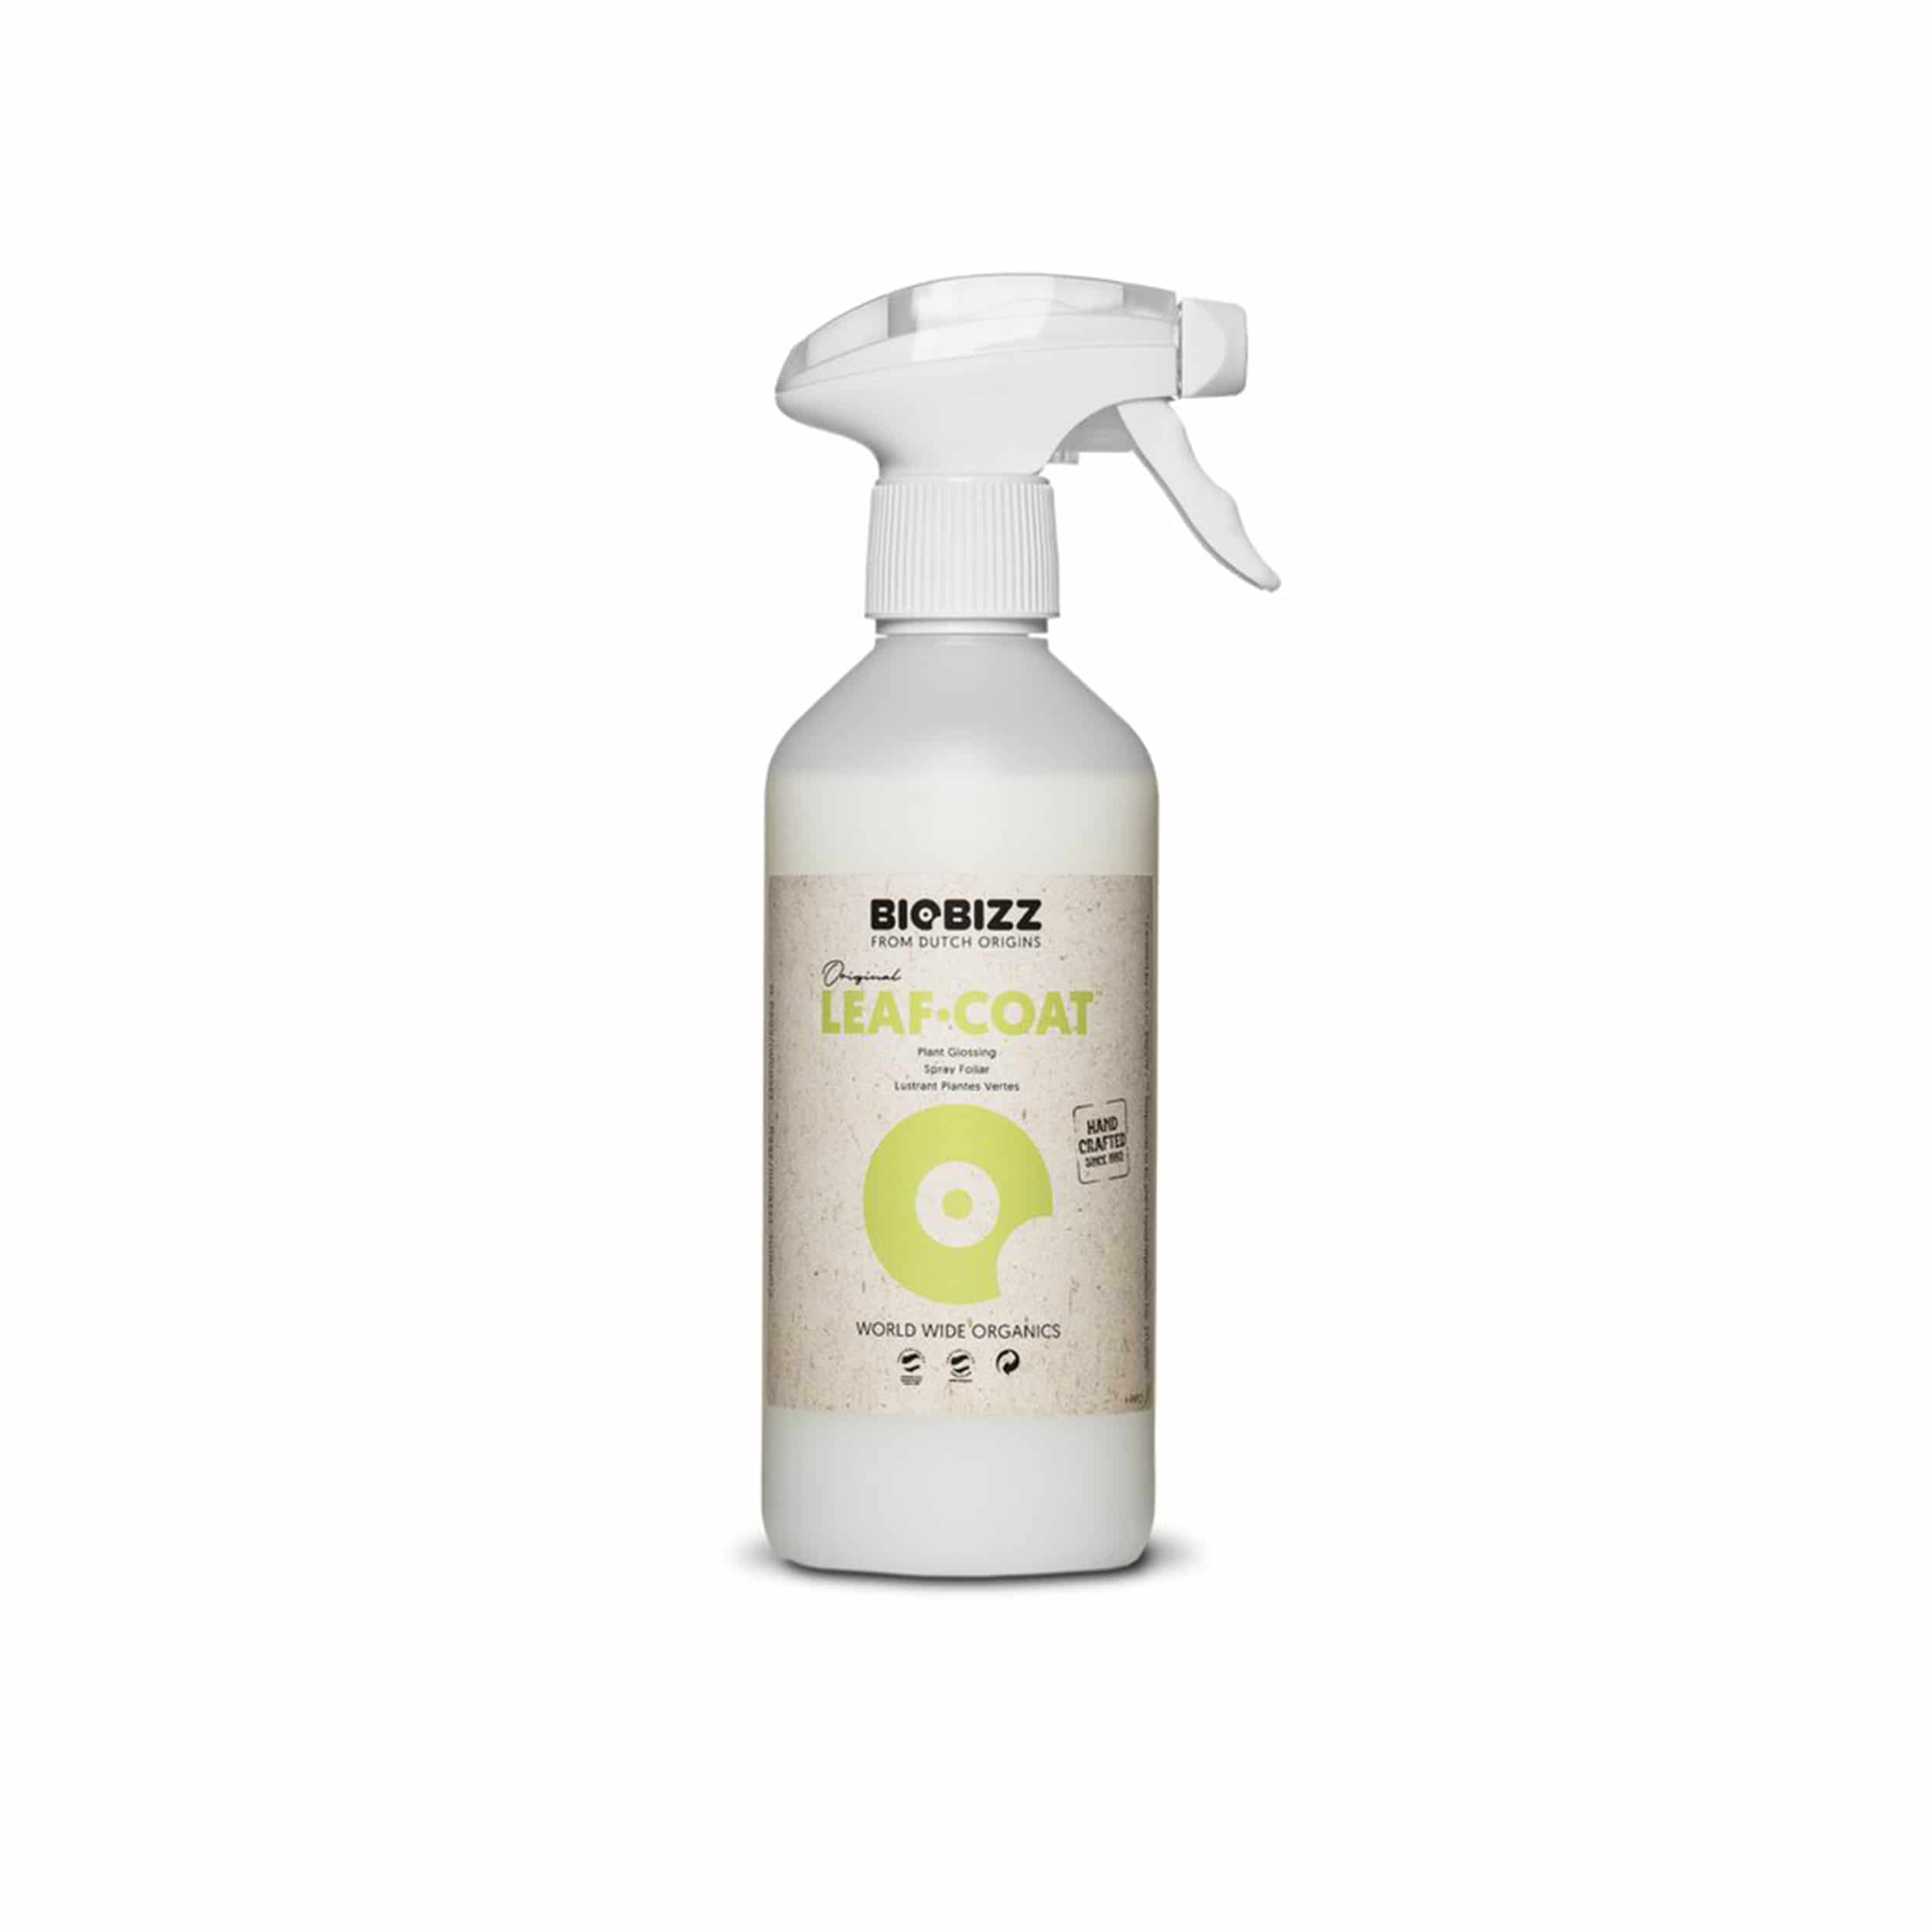 BioBizz Leaf-Coat 500 ml als Sprühflasche